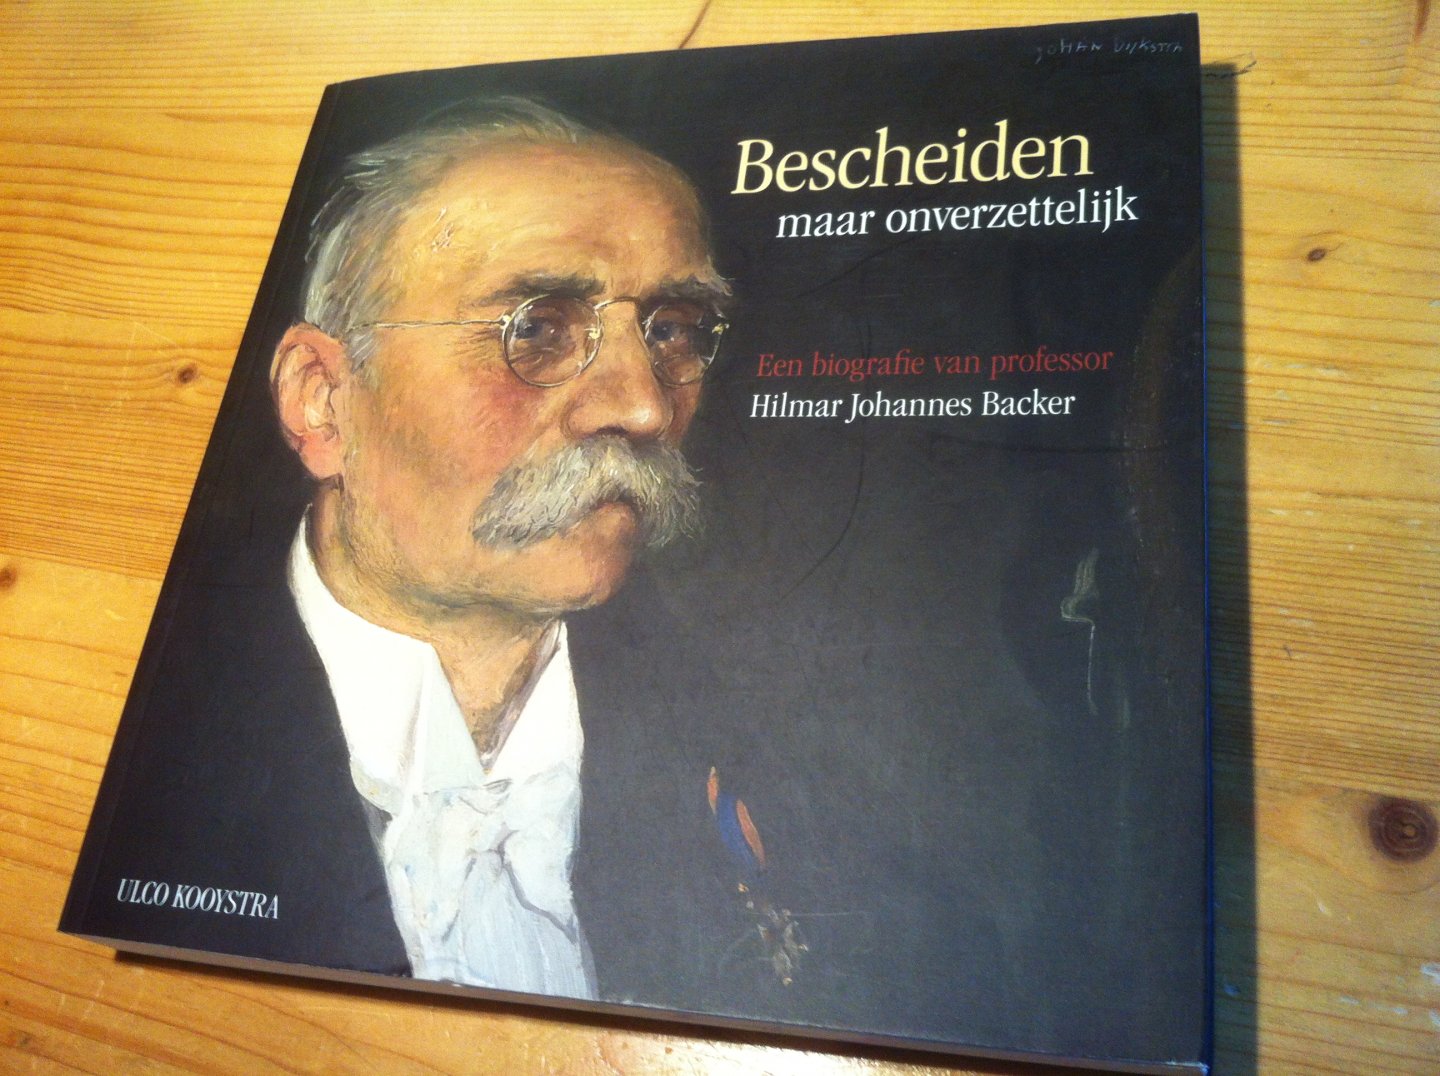 Kooystra, Ulco - Bescheiden maar onverzettelijk - Een biografie van professor Hilmar Johannes Backer